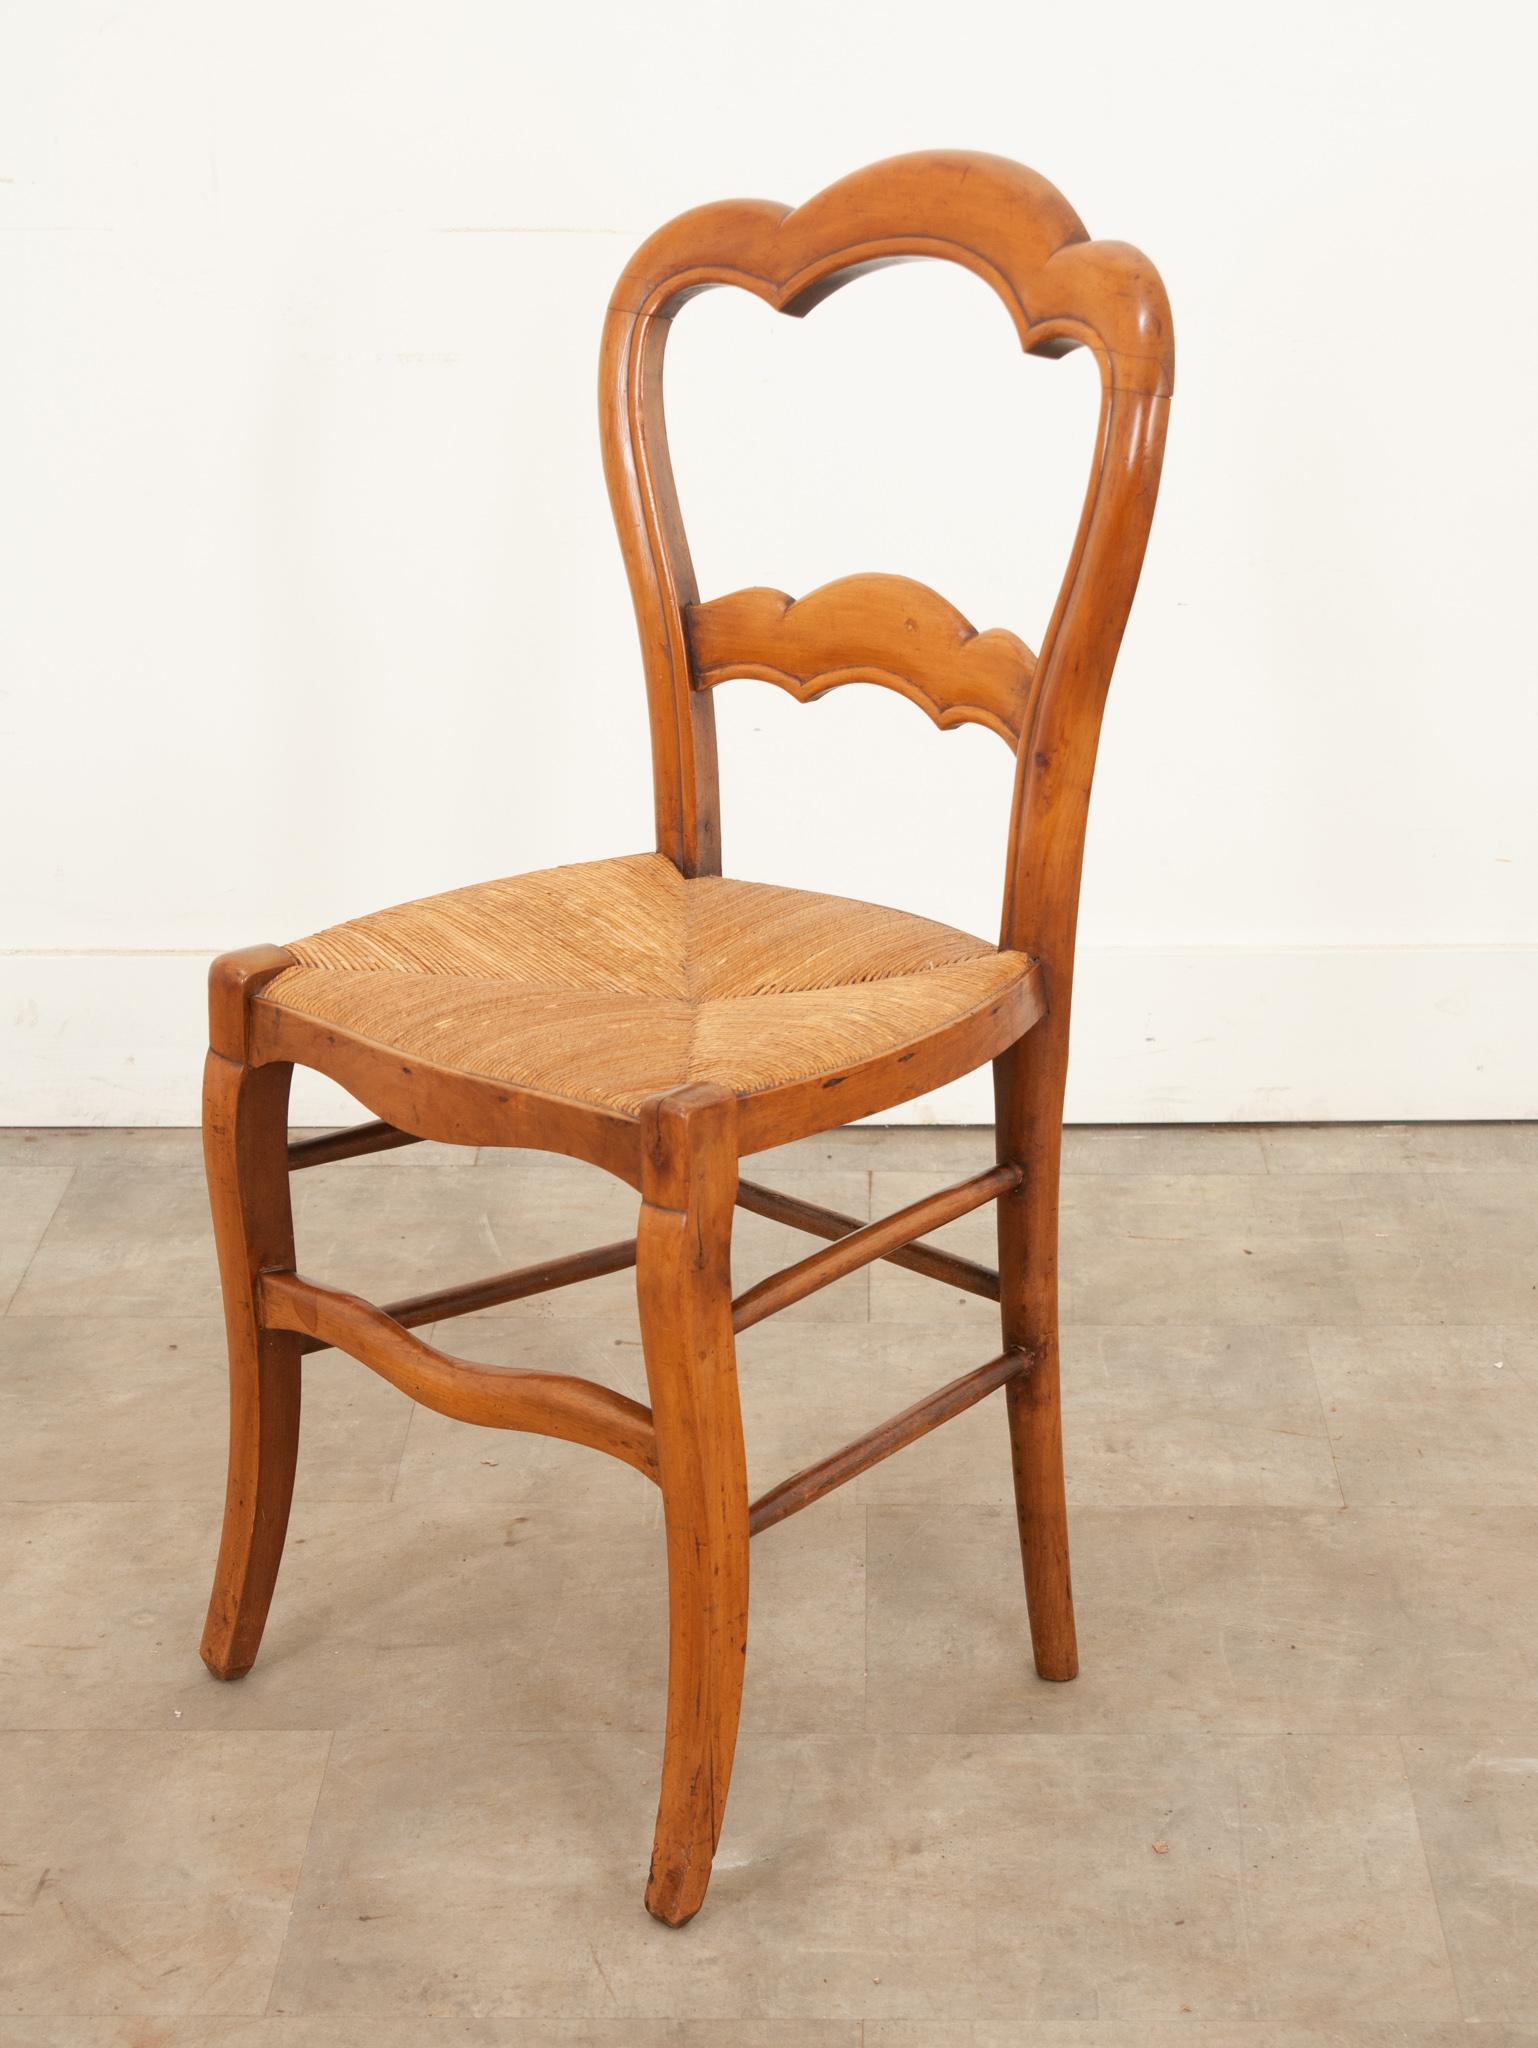 Chaise anglaise du 19ème siècle en bois fruitier avec une assise en jonc. Cette chaise a été fabriquée à la main en Angleterre vers 1870 et est tout simplement adorable avec son dossier festonné sculpté et son assise en jonc chaud qui est en très